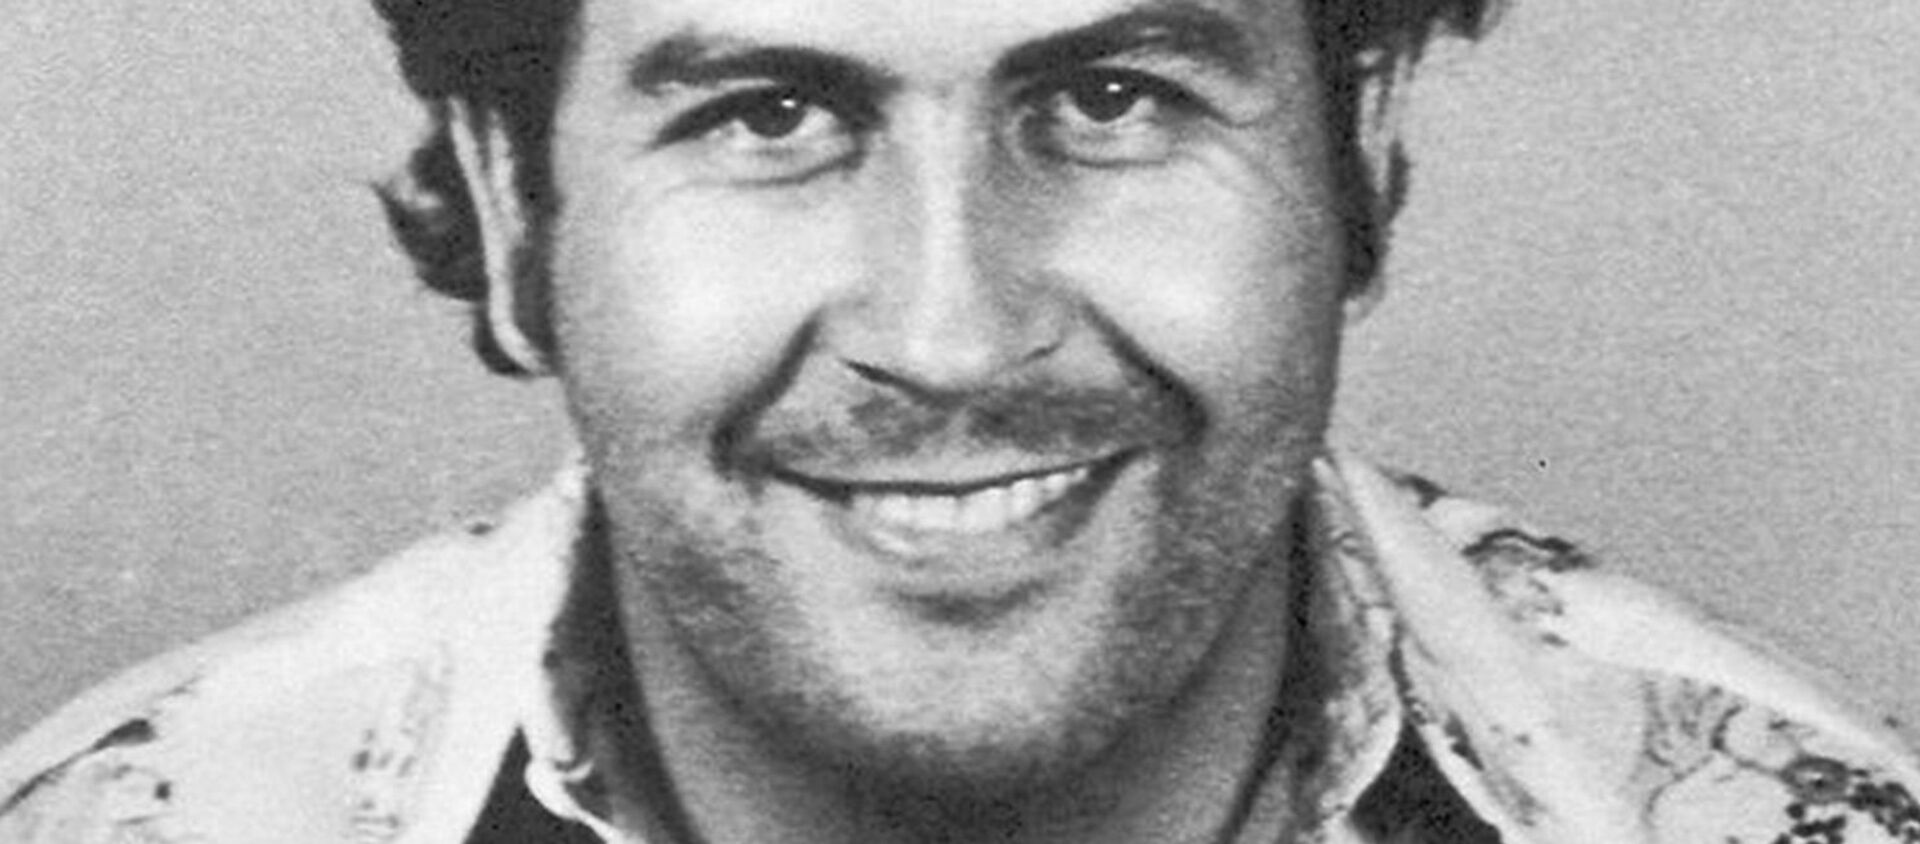 La foto de captura de Pablo Escobar en Colombia en 1977 - Sputnik Mundo, 1920, 27.11.2019